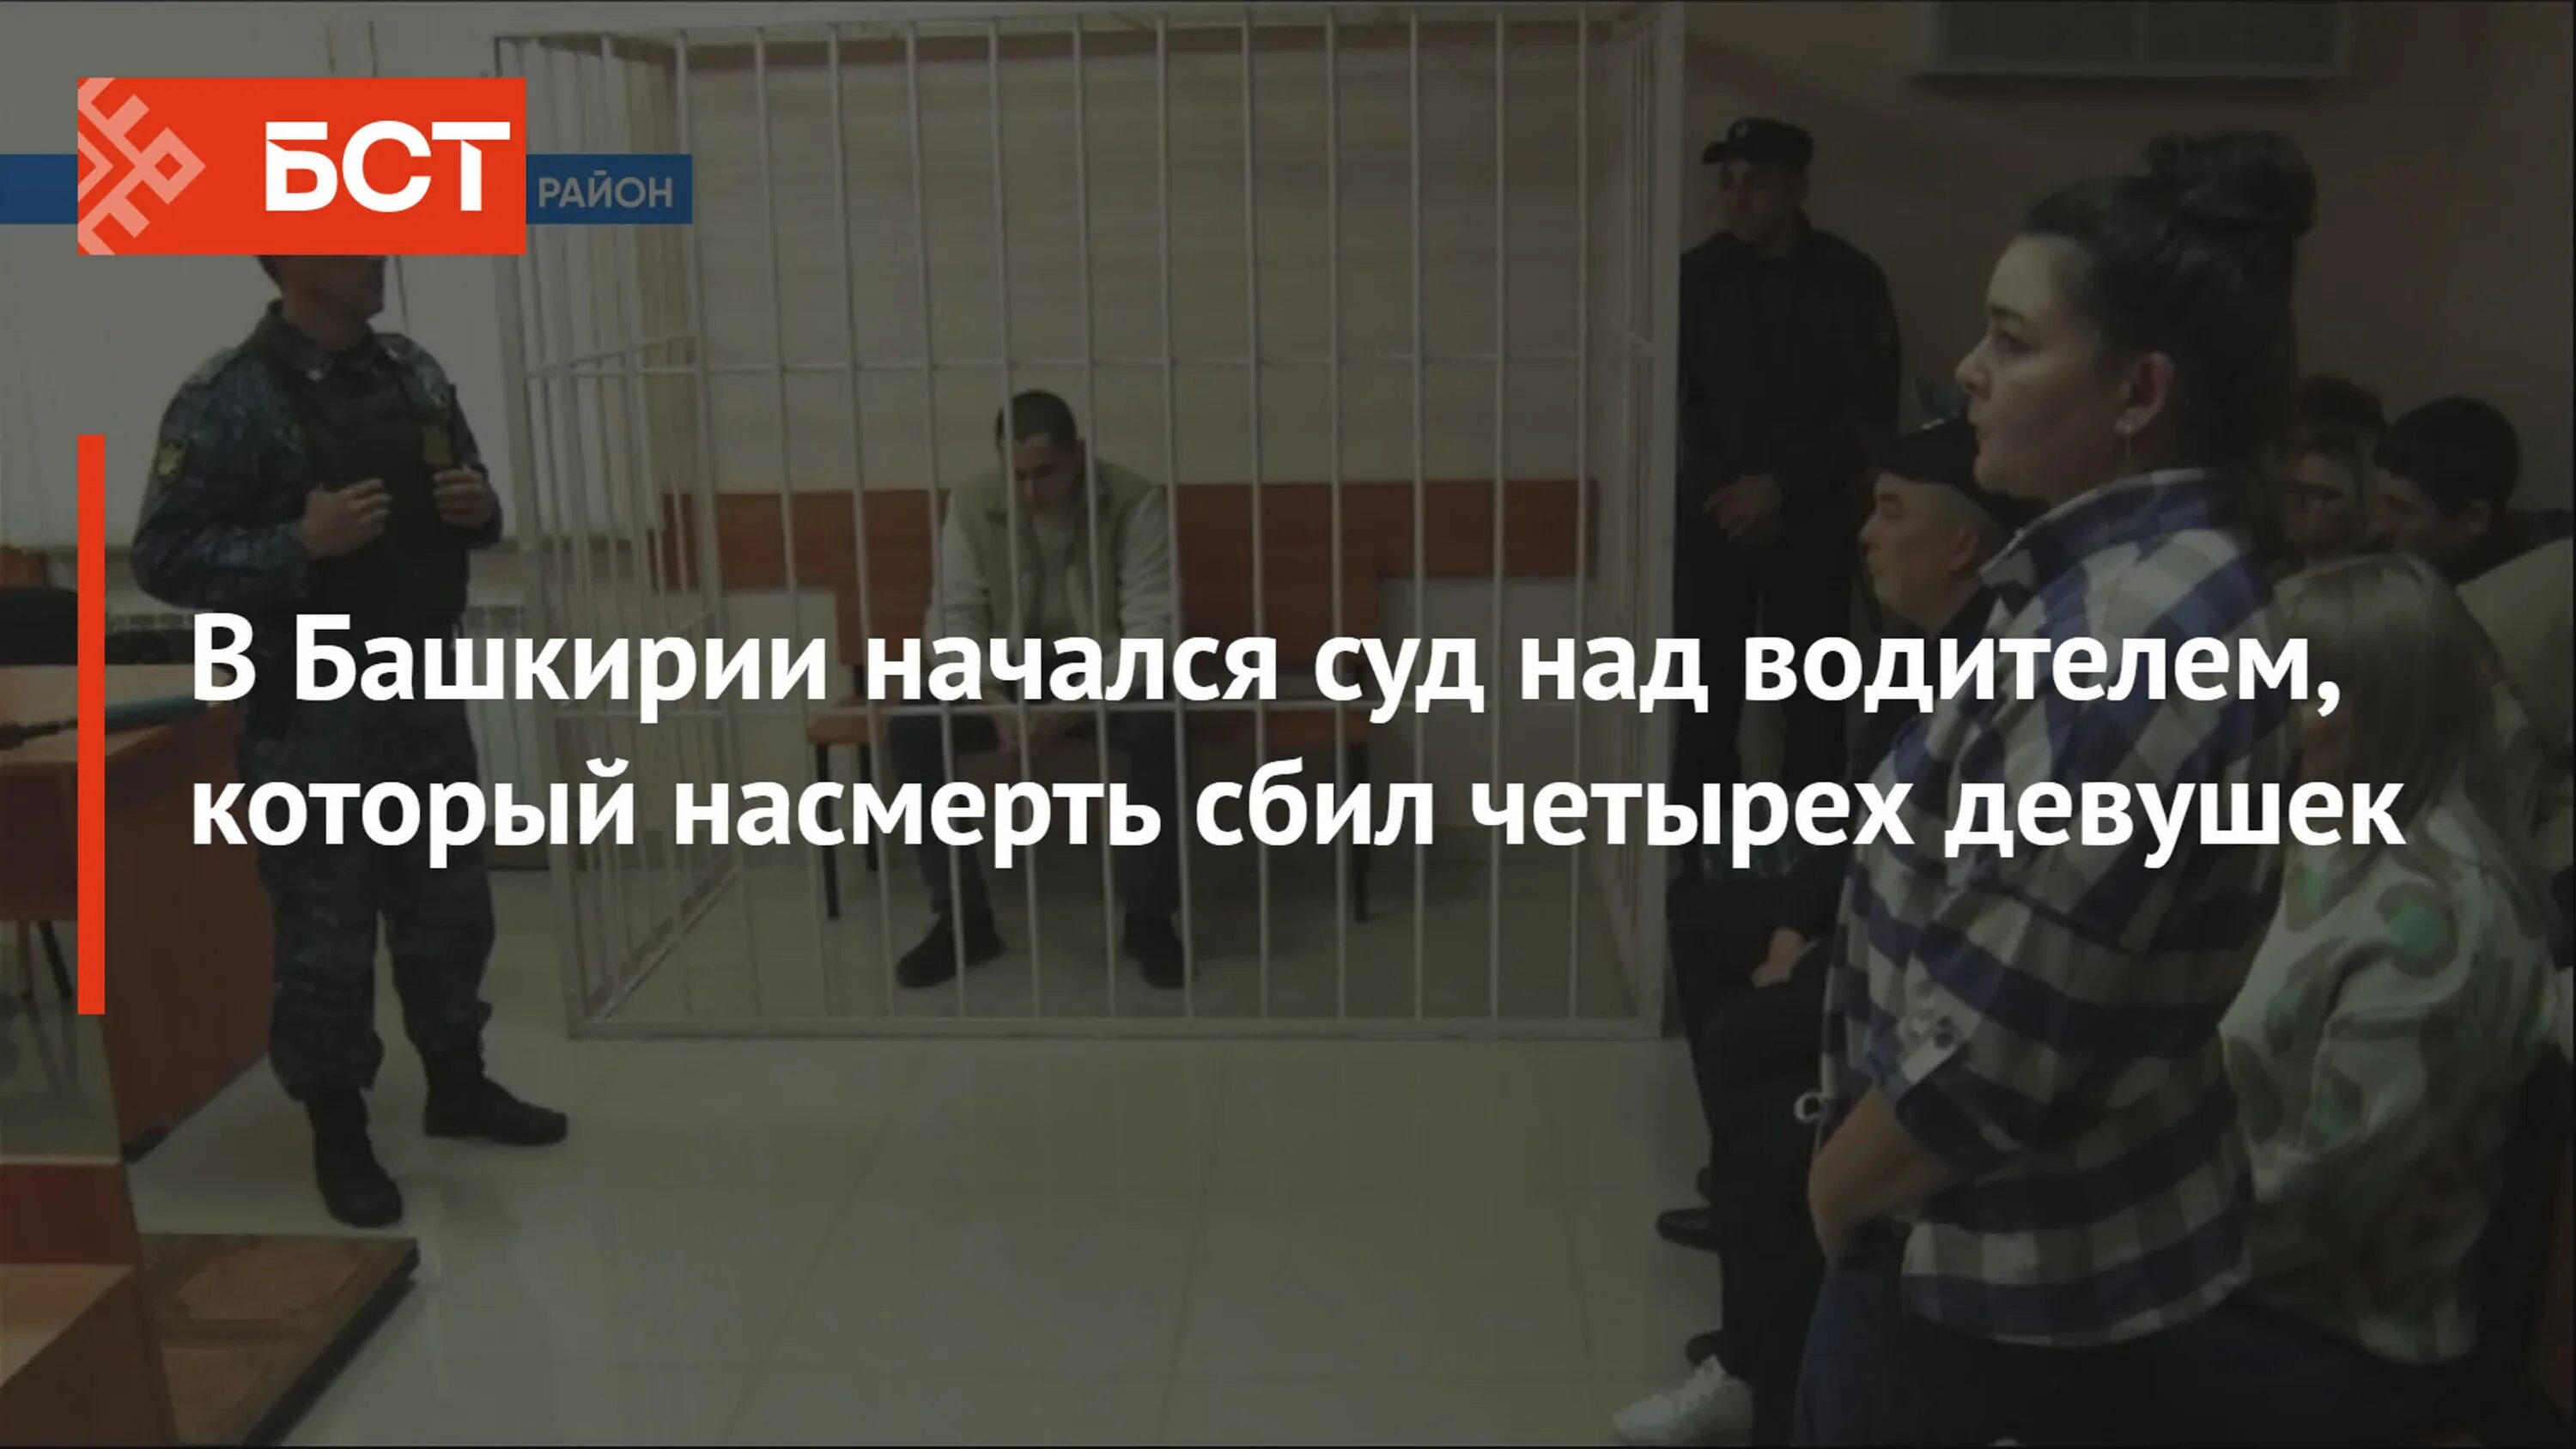 Закончился ли суд над бишембаевым. Суд над. В Бакалинском районе сбили 4 девушек. Марс Гузаяров Бакалы.